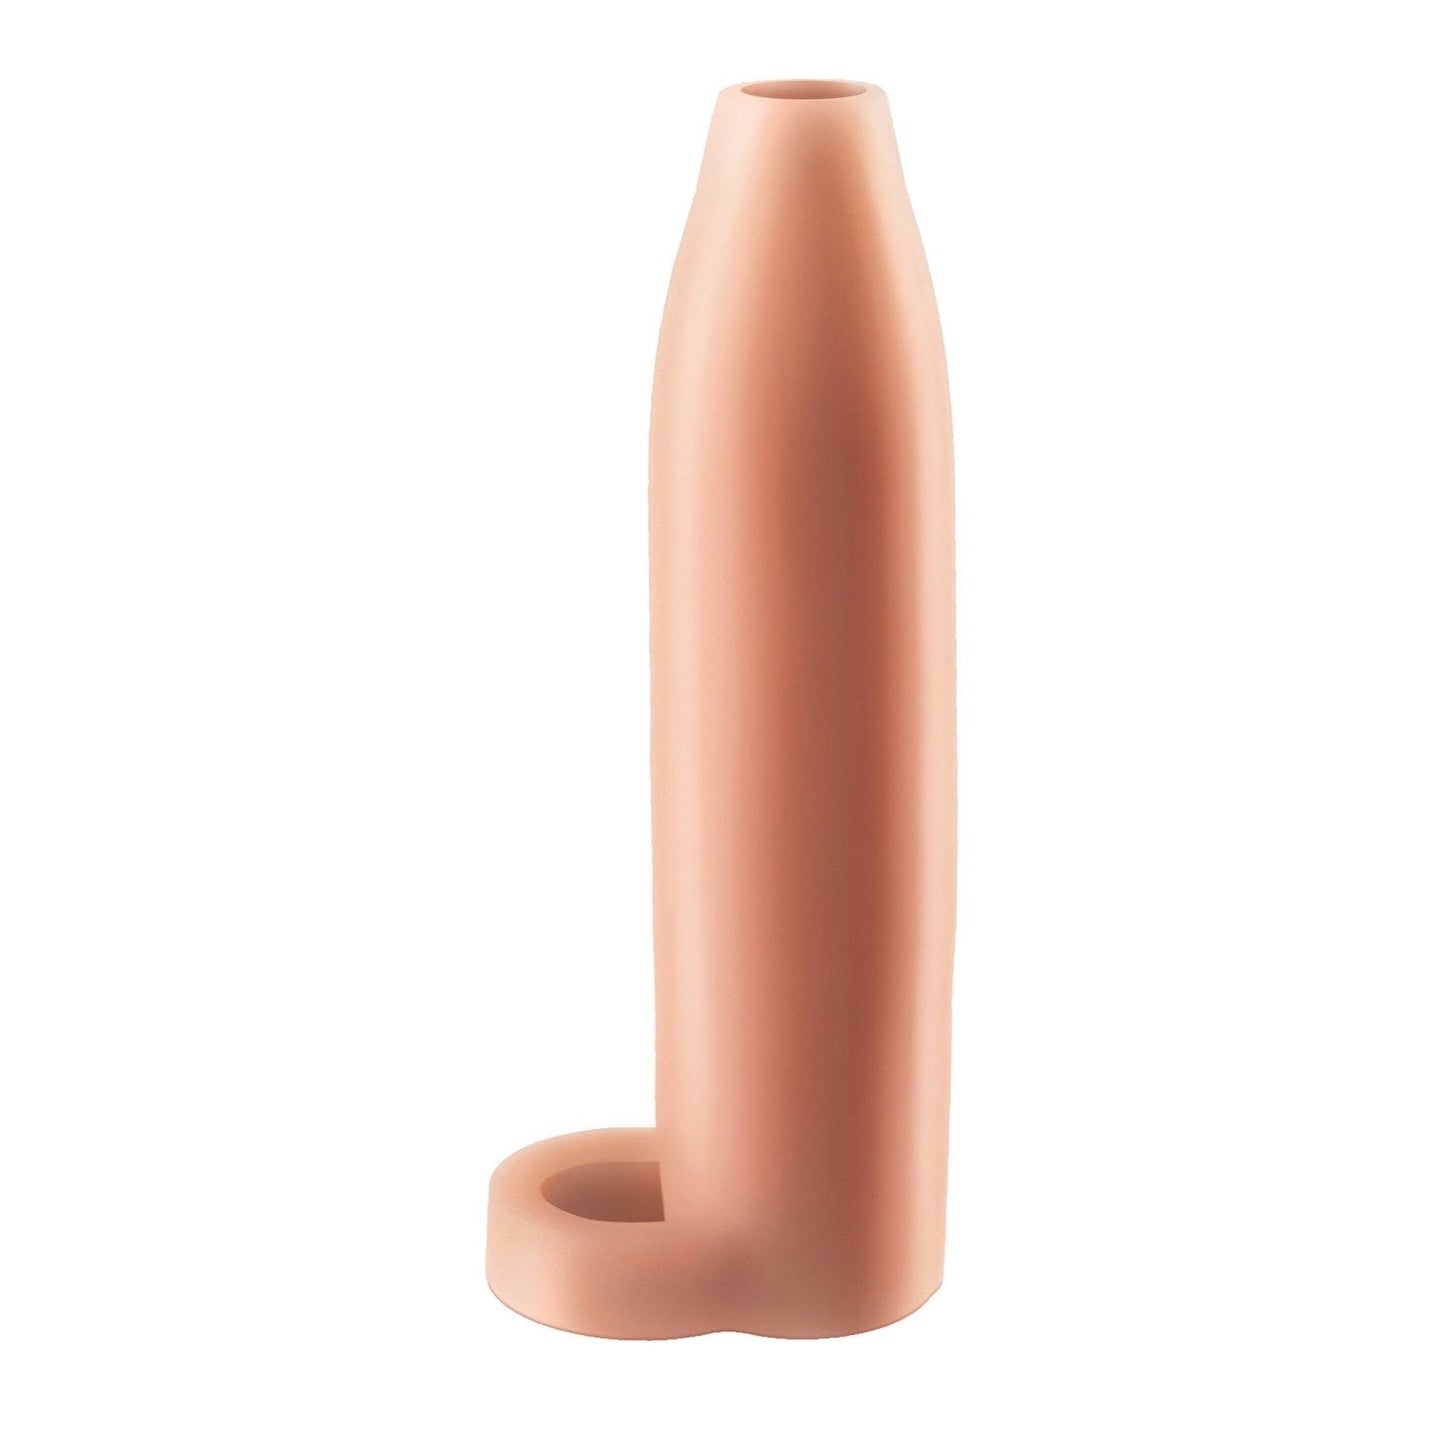 रियल फील एनहांसर एक्सएल - बॉल स्ट्रैप के साथ लिंग का आकार बढ़ाने वाली स्लीव